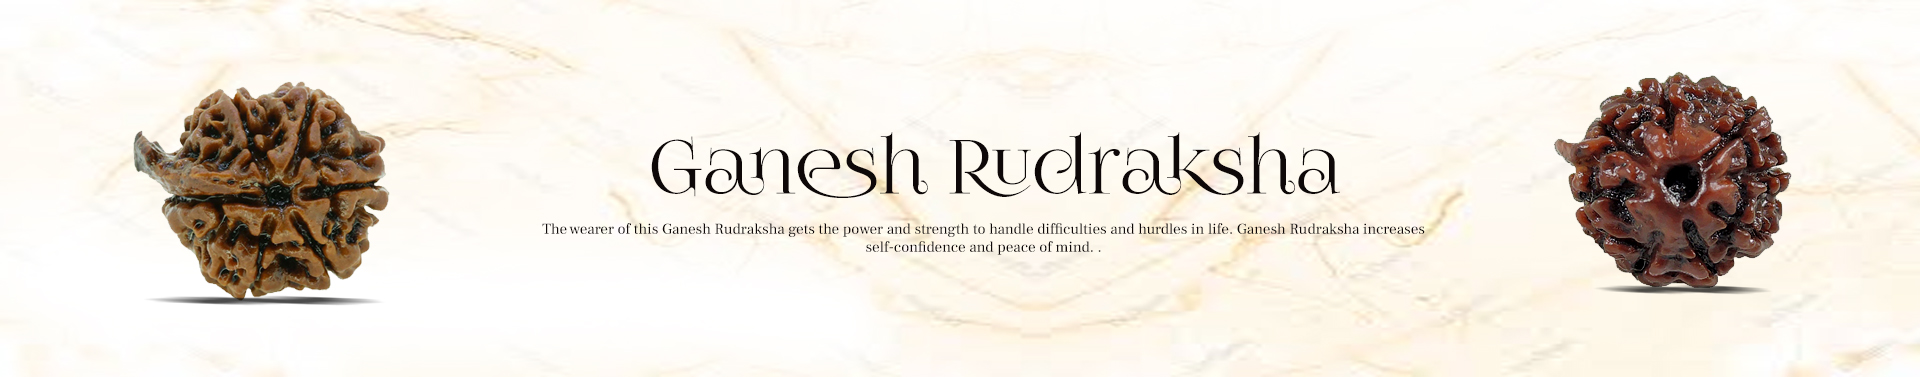 Ganesh Rudraksha